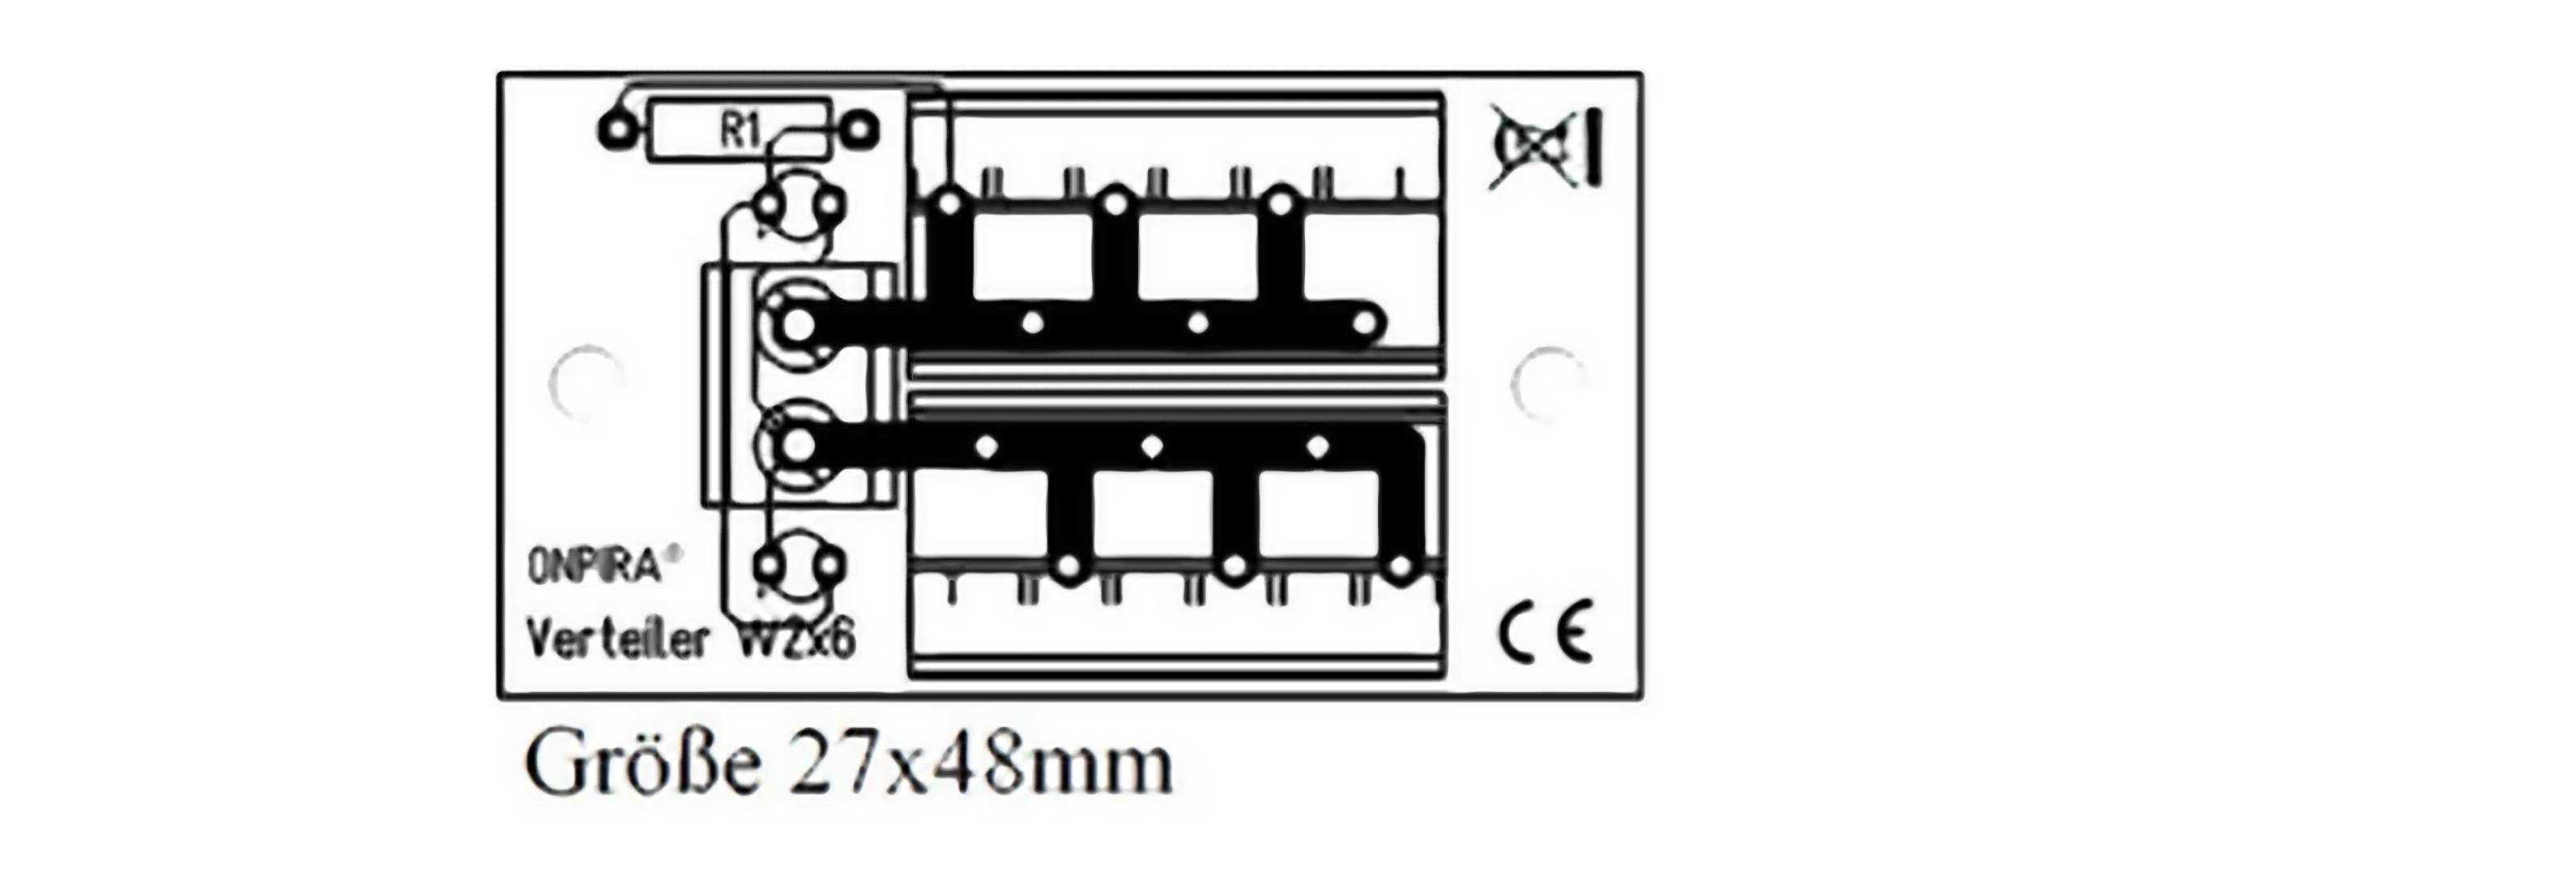 Stromverteiler TIVENDIS Schraube AC/DC Platine W2x6 8A